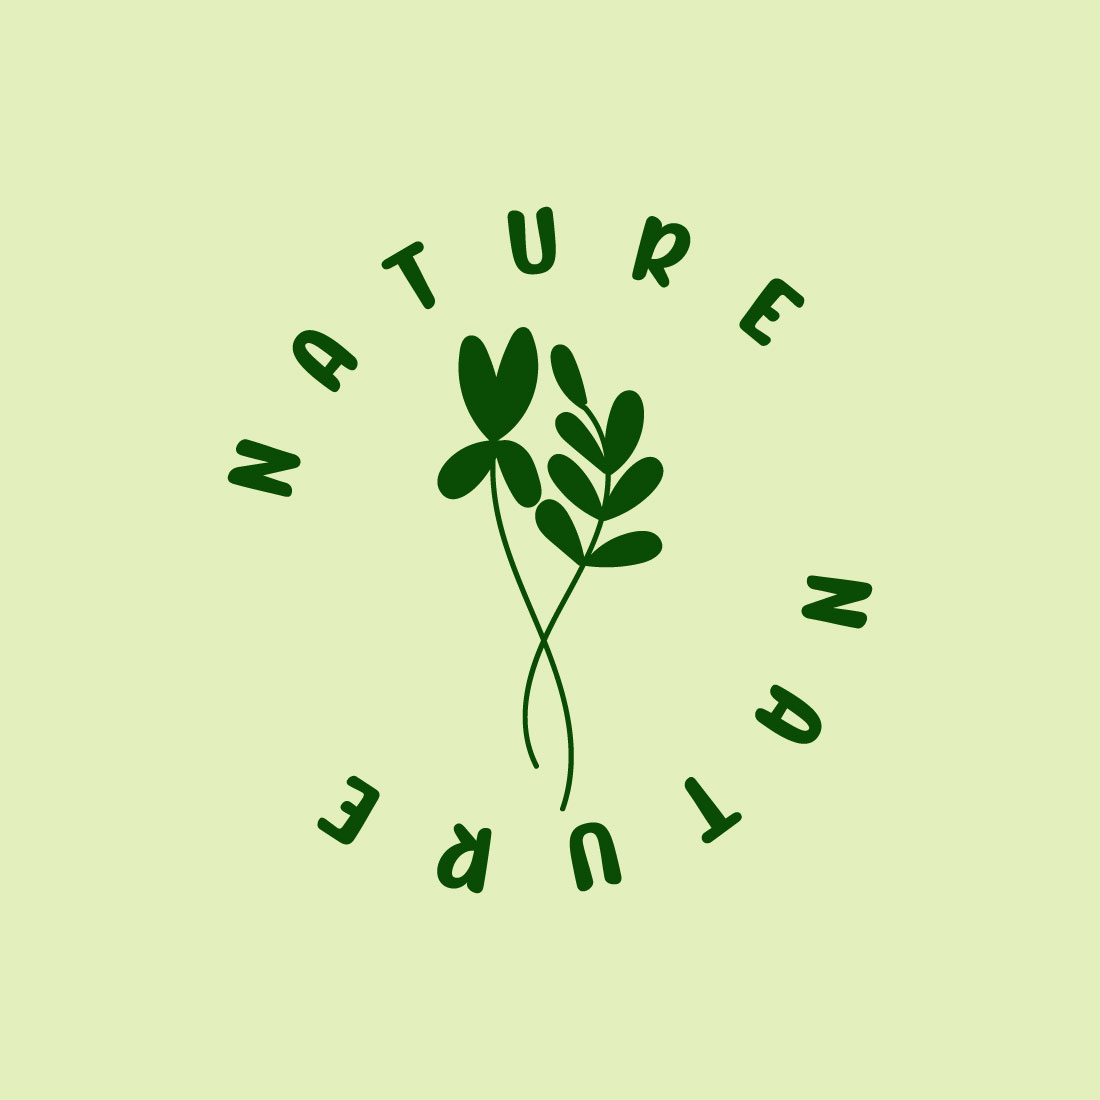 Free botanical drawing logo preview image.